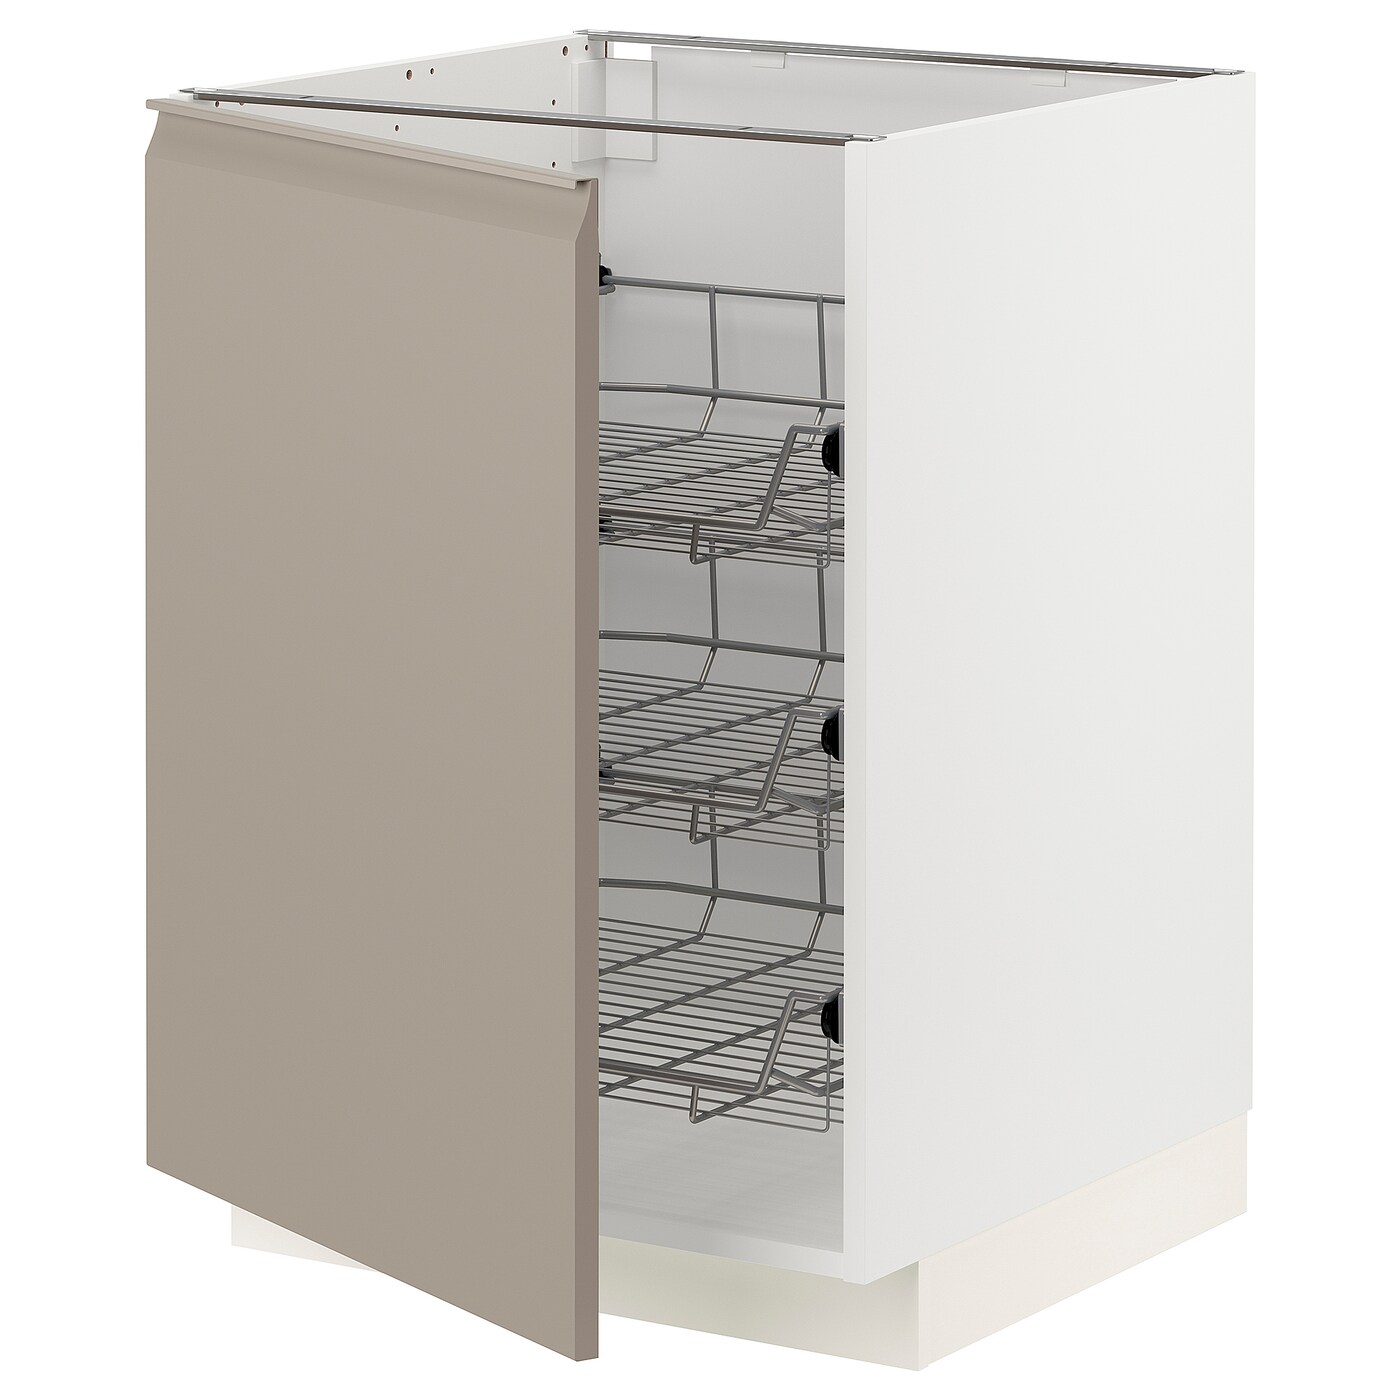 Напольный кухонный шкаф  - IKEA METOD, 88x62x60см, белый/темно-бежевый, МЕТОД ИКЕА